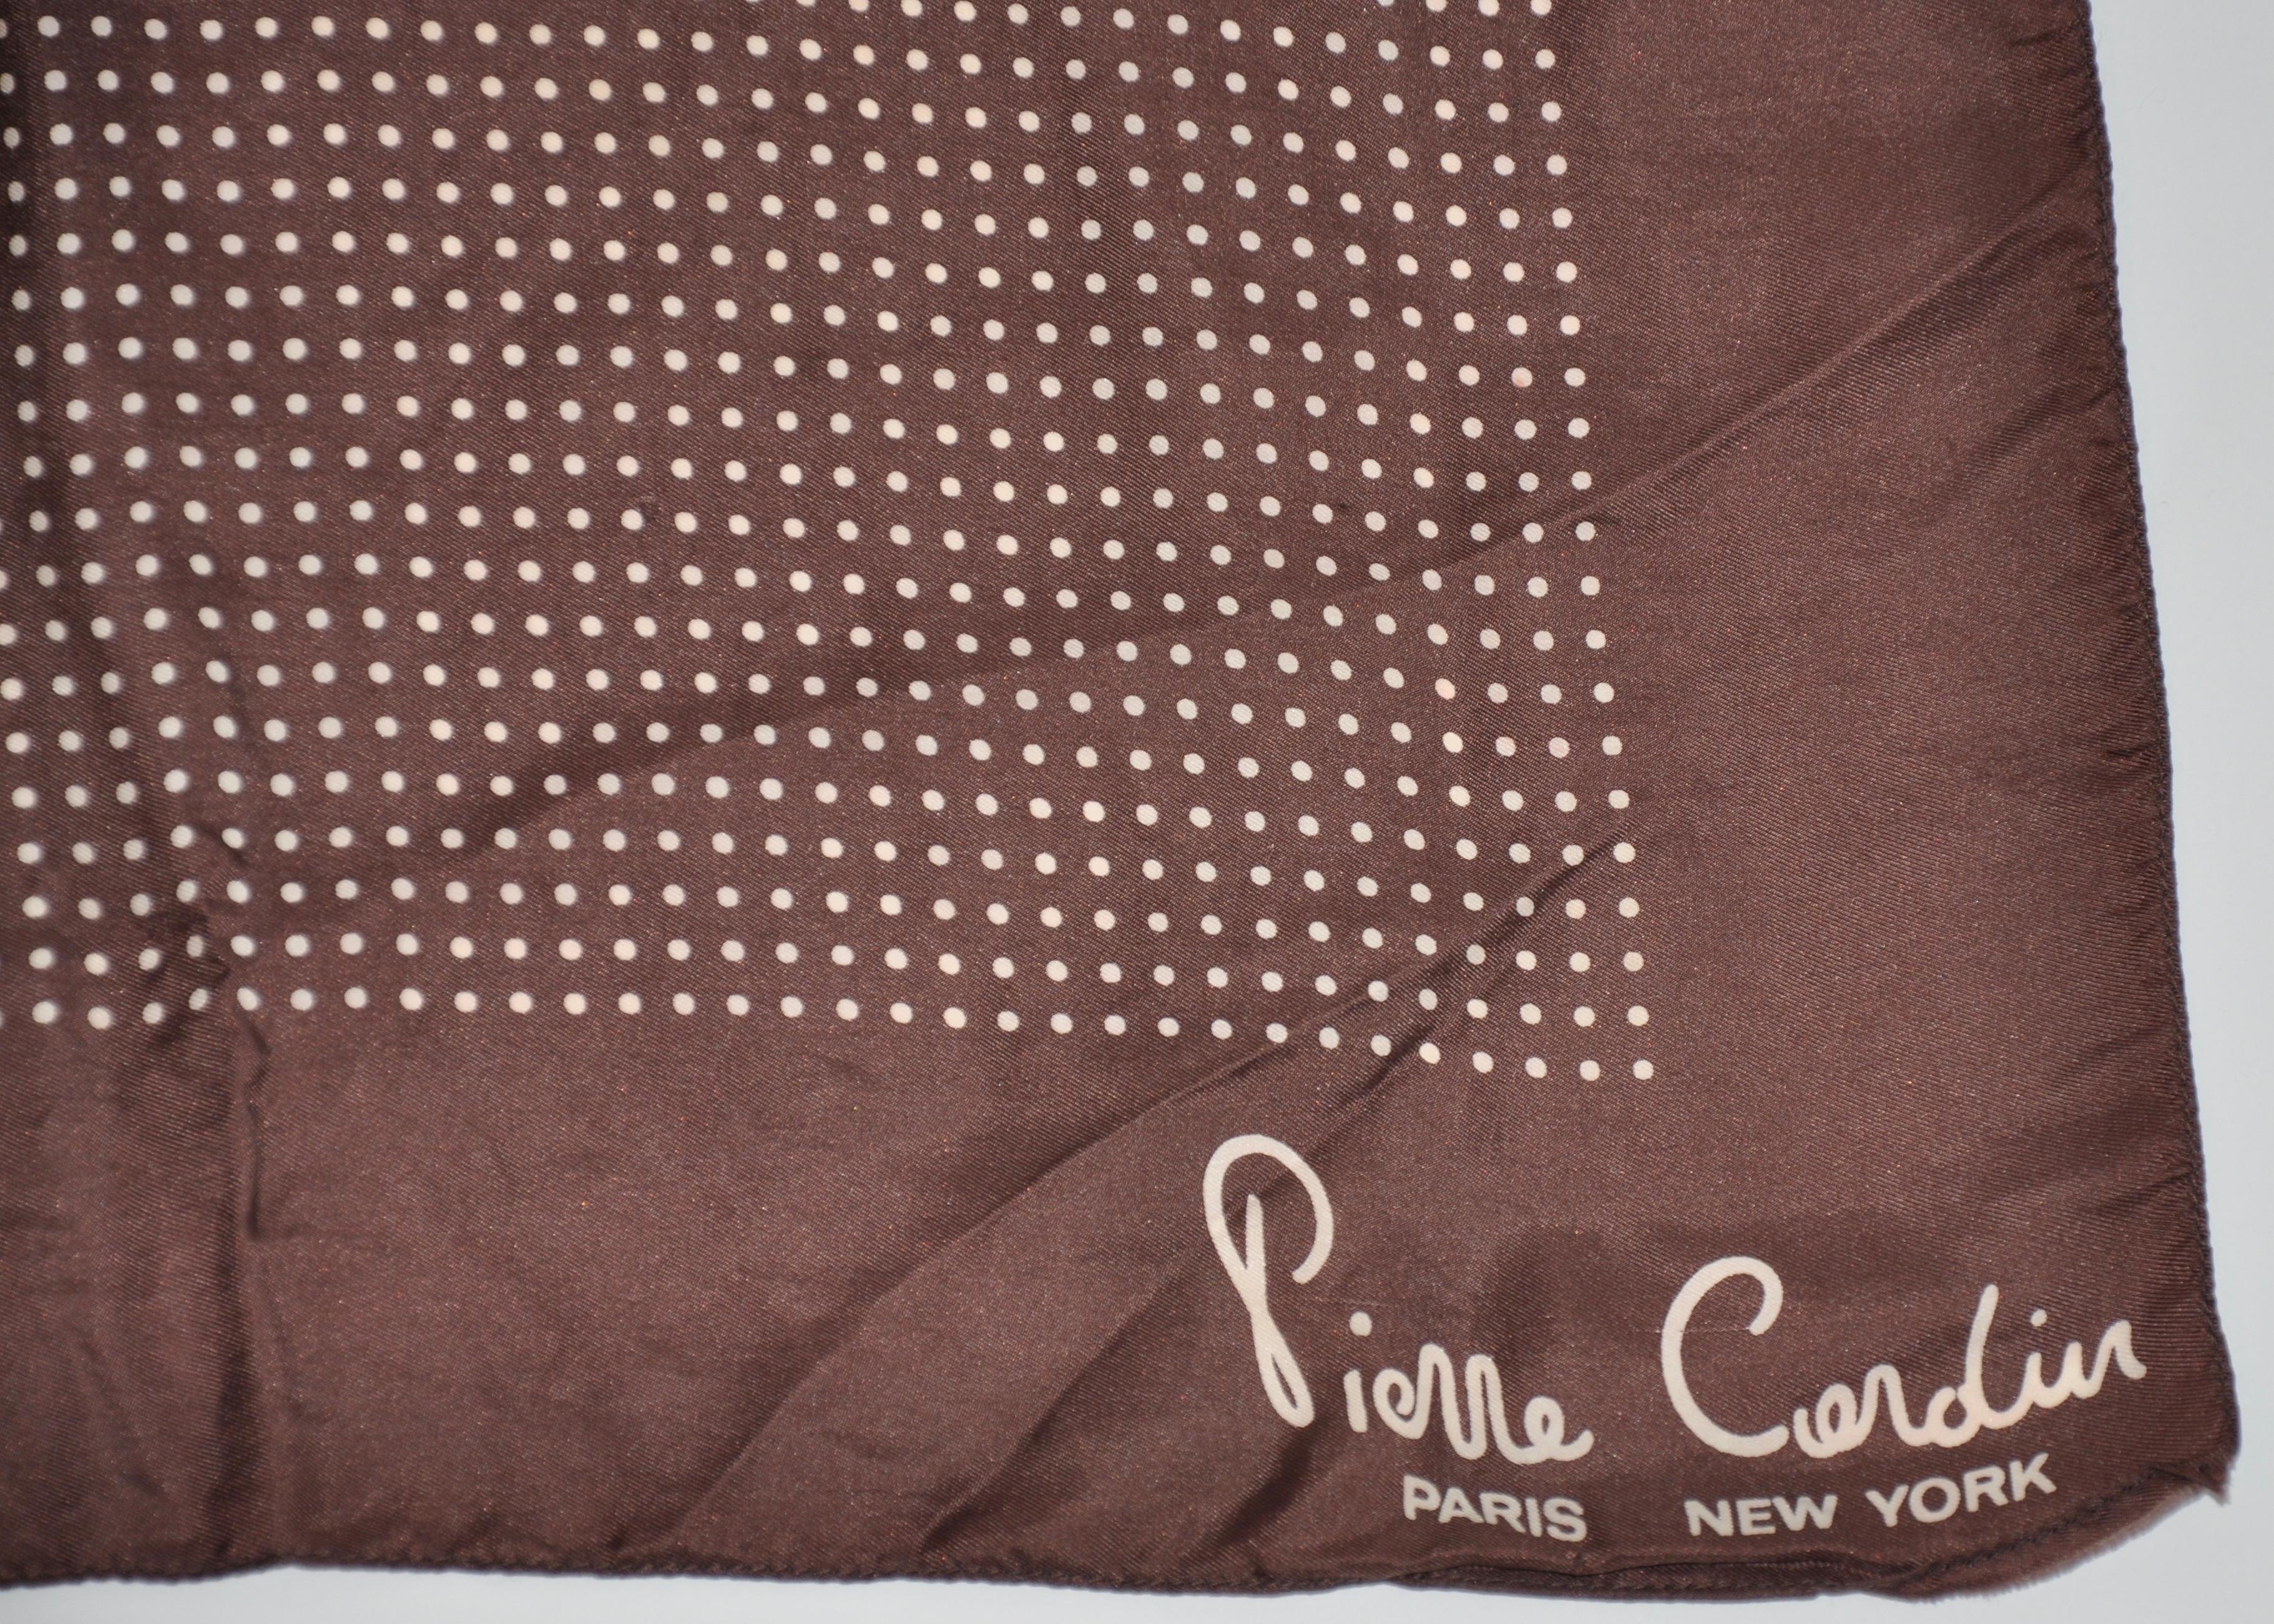        Pierre Cardin Unterschrift coco und Creme Seide Taschentuch ist mit handgerollten Kanten akzentuiert und misst 17 Zoll mal 17 Zoll. Hergestellt in England.